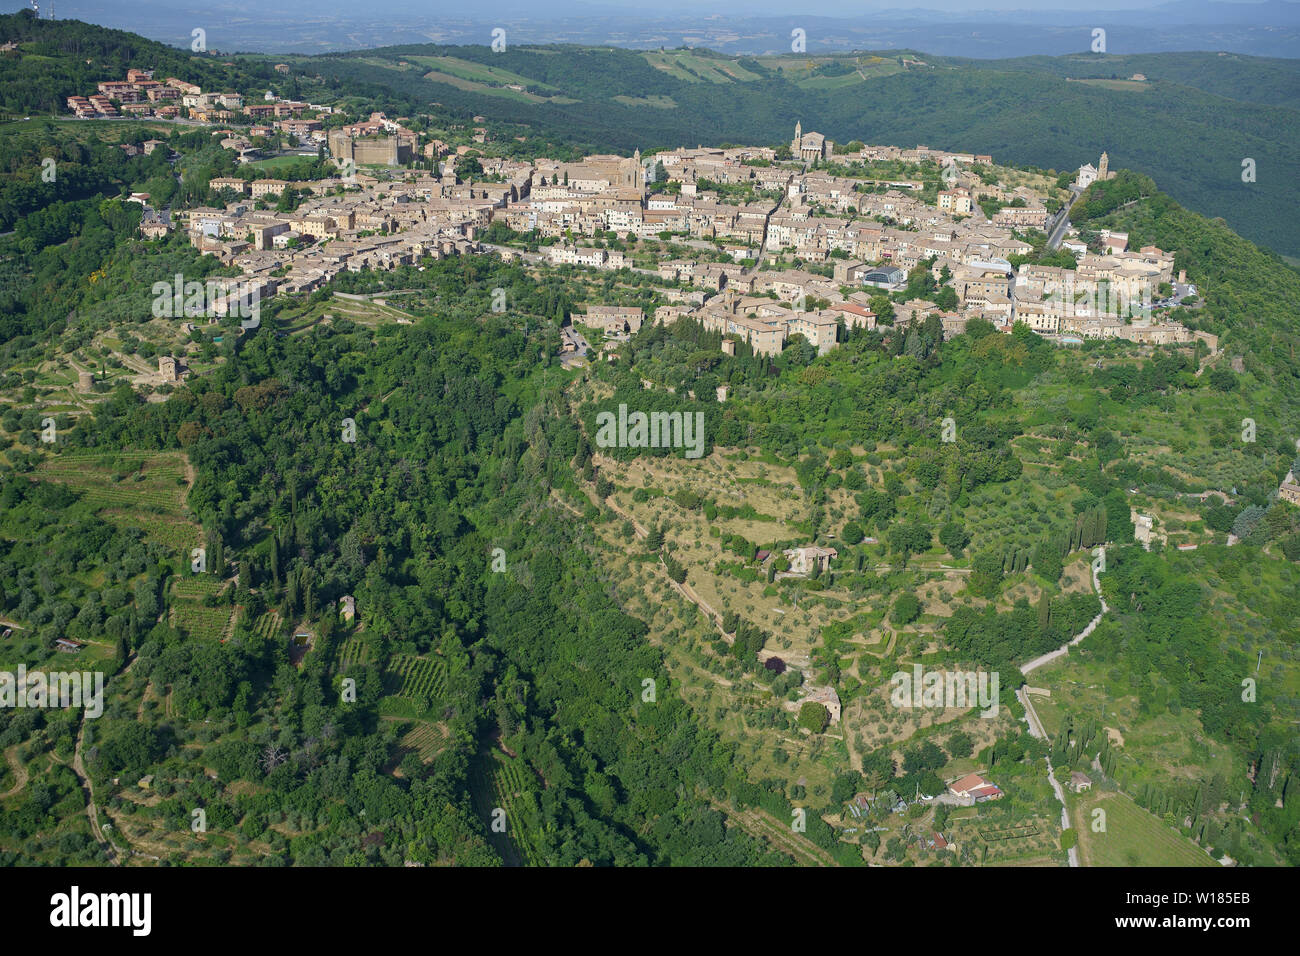 LUFTAUFNAHME. Malerische mittelalterliche Stadt auf einem Hügel im Val d'Orcia. Montalcino, Provinz Siena, Toskana, Italien. Stockfoto